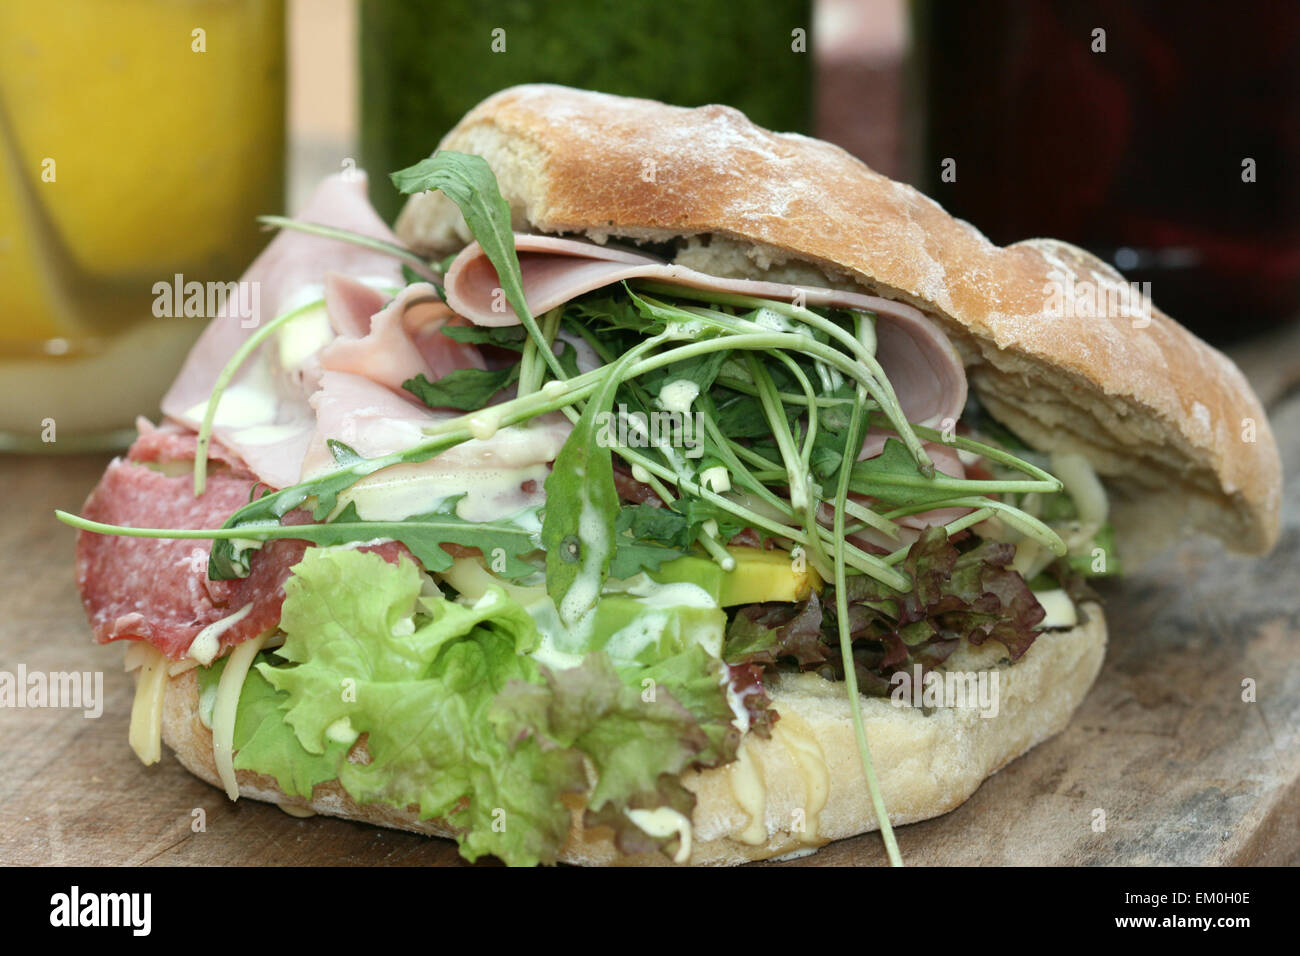 Jambon et salami sandwich sandwich dans un petit pain focaccia Banque D'Images